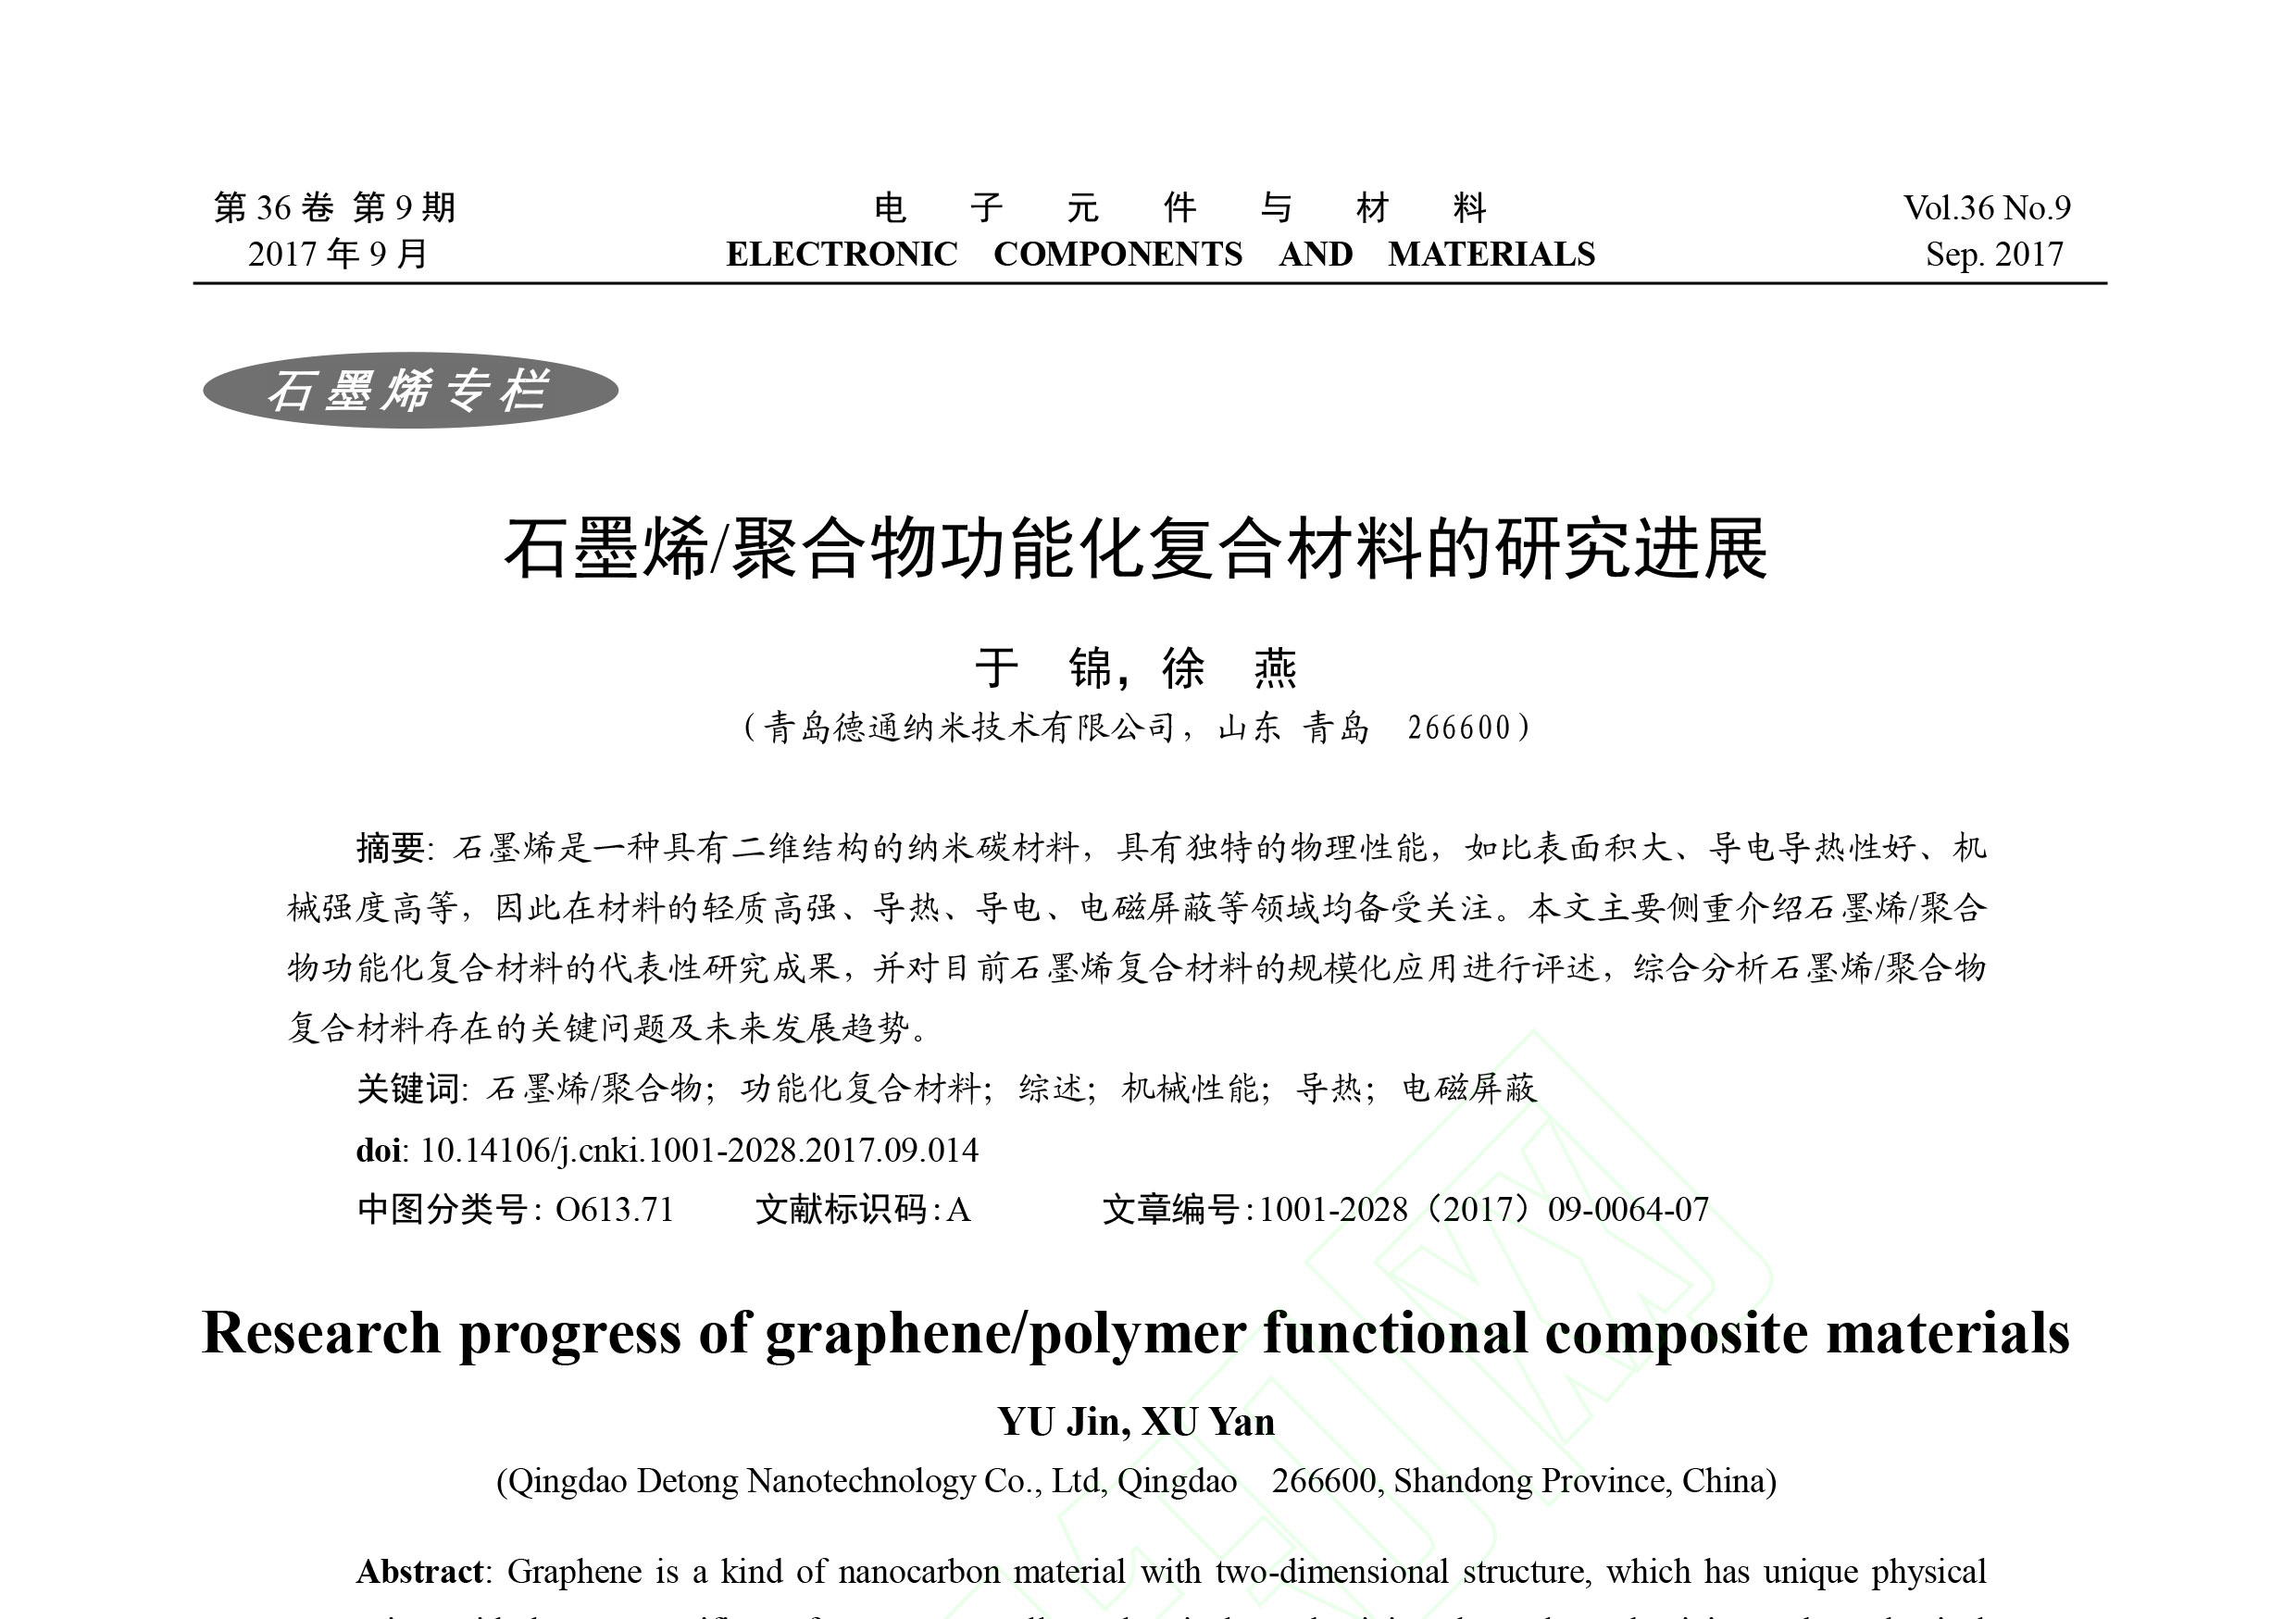 《电子元件与材料》刊发了青岛德通纳米技术有限公司员工撰写的《石墨烯/聚合物功能化复合材料的研究进展》一文